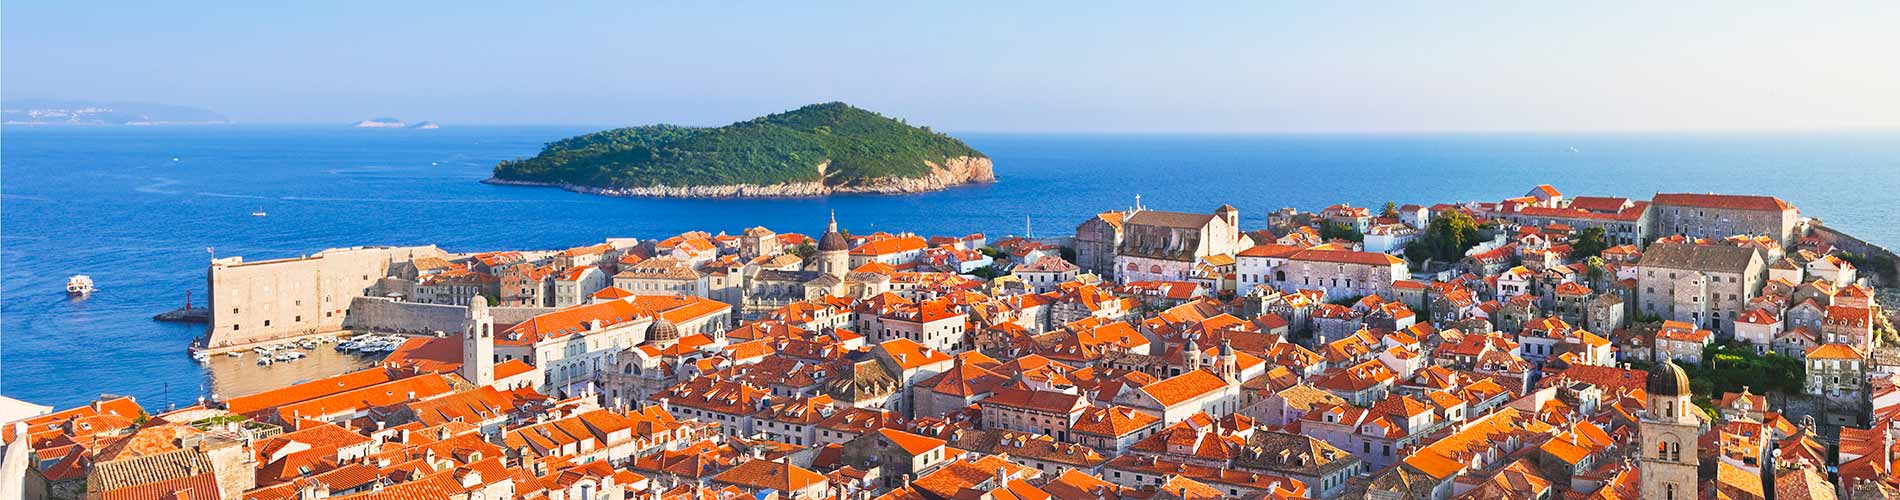 Panorama of Dubrovnik in Croatia.jpg